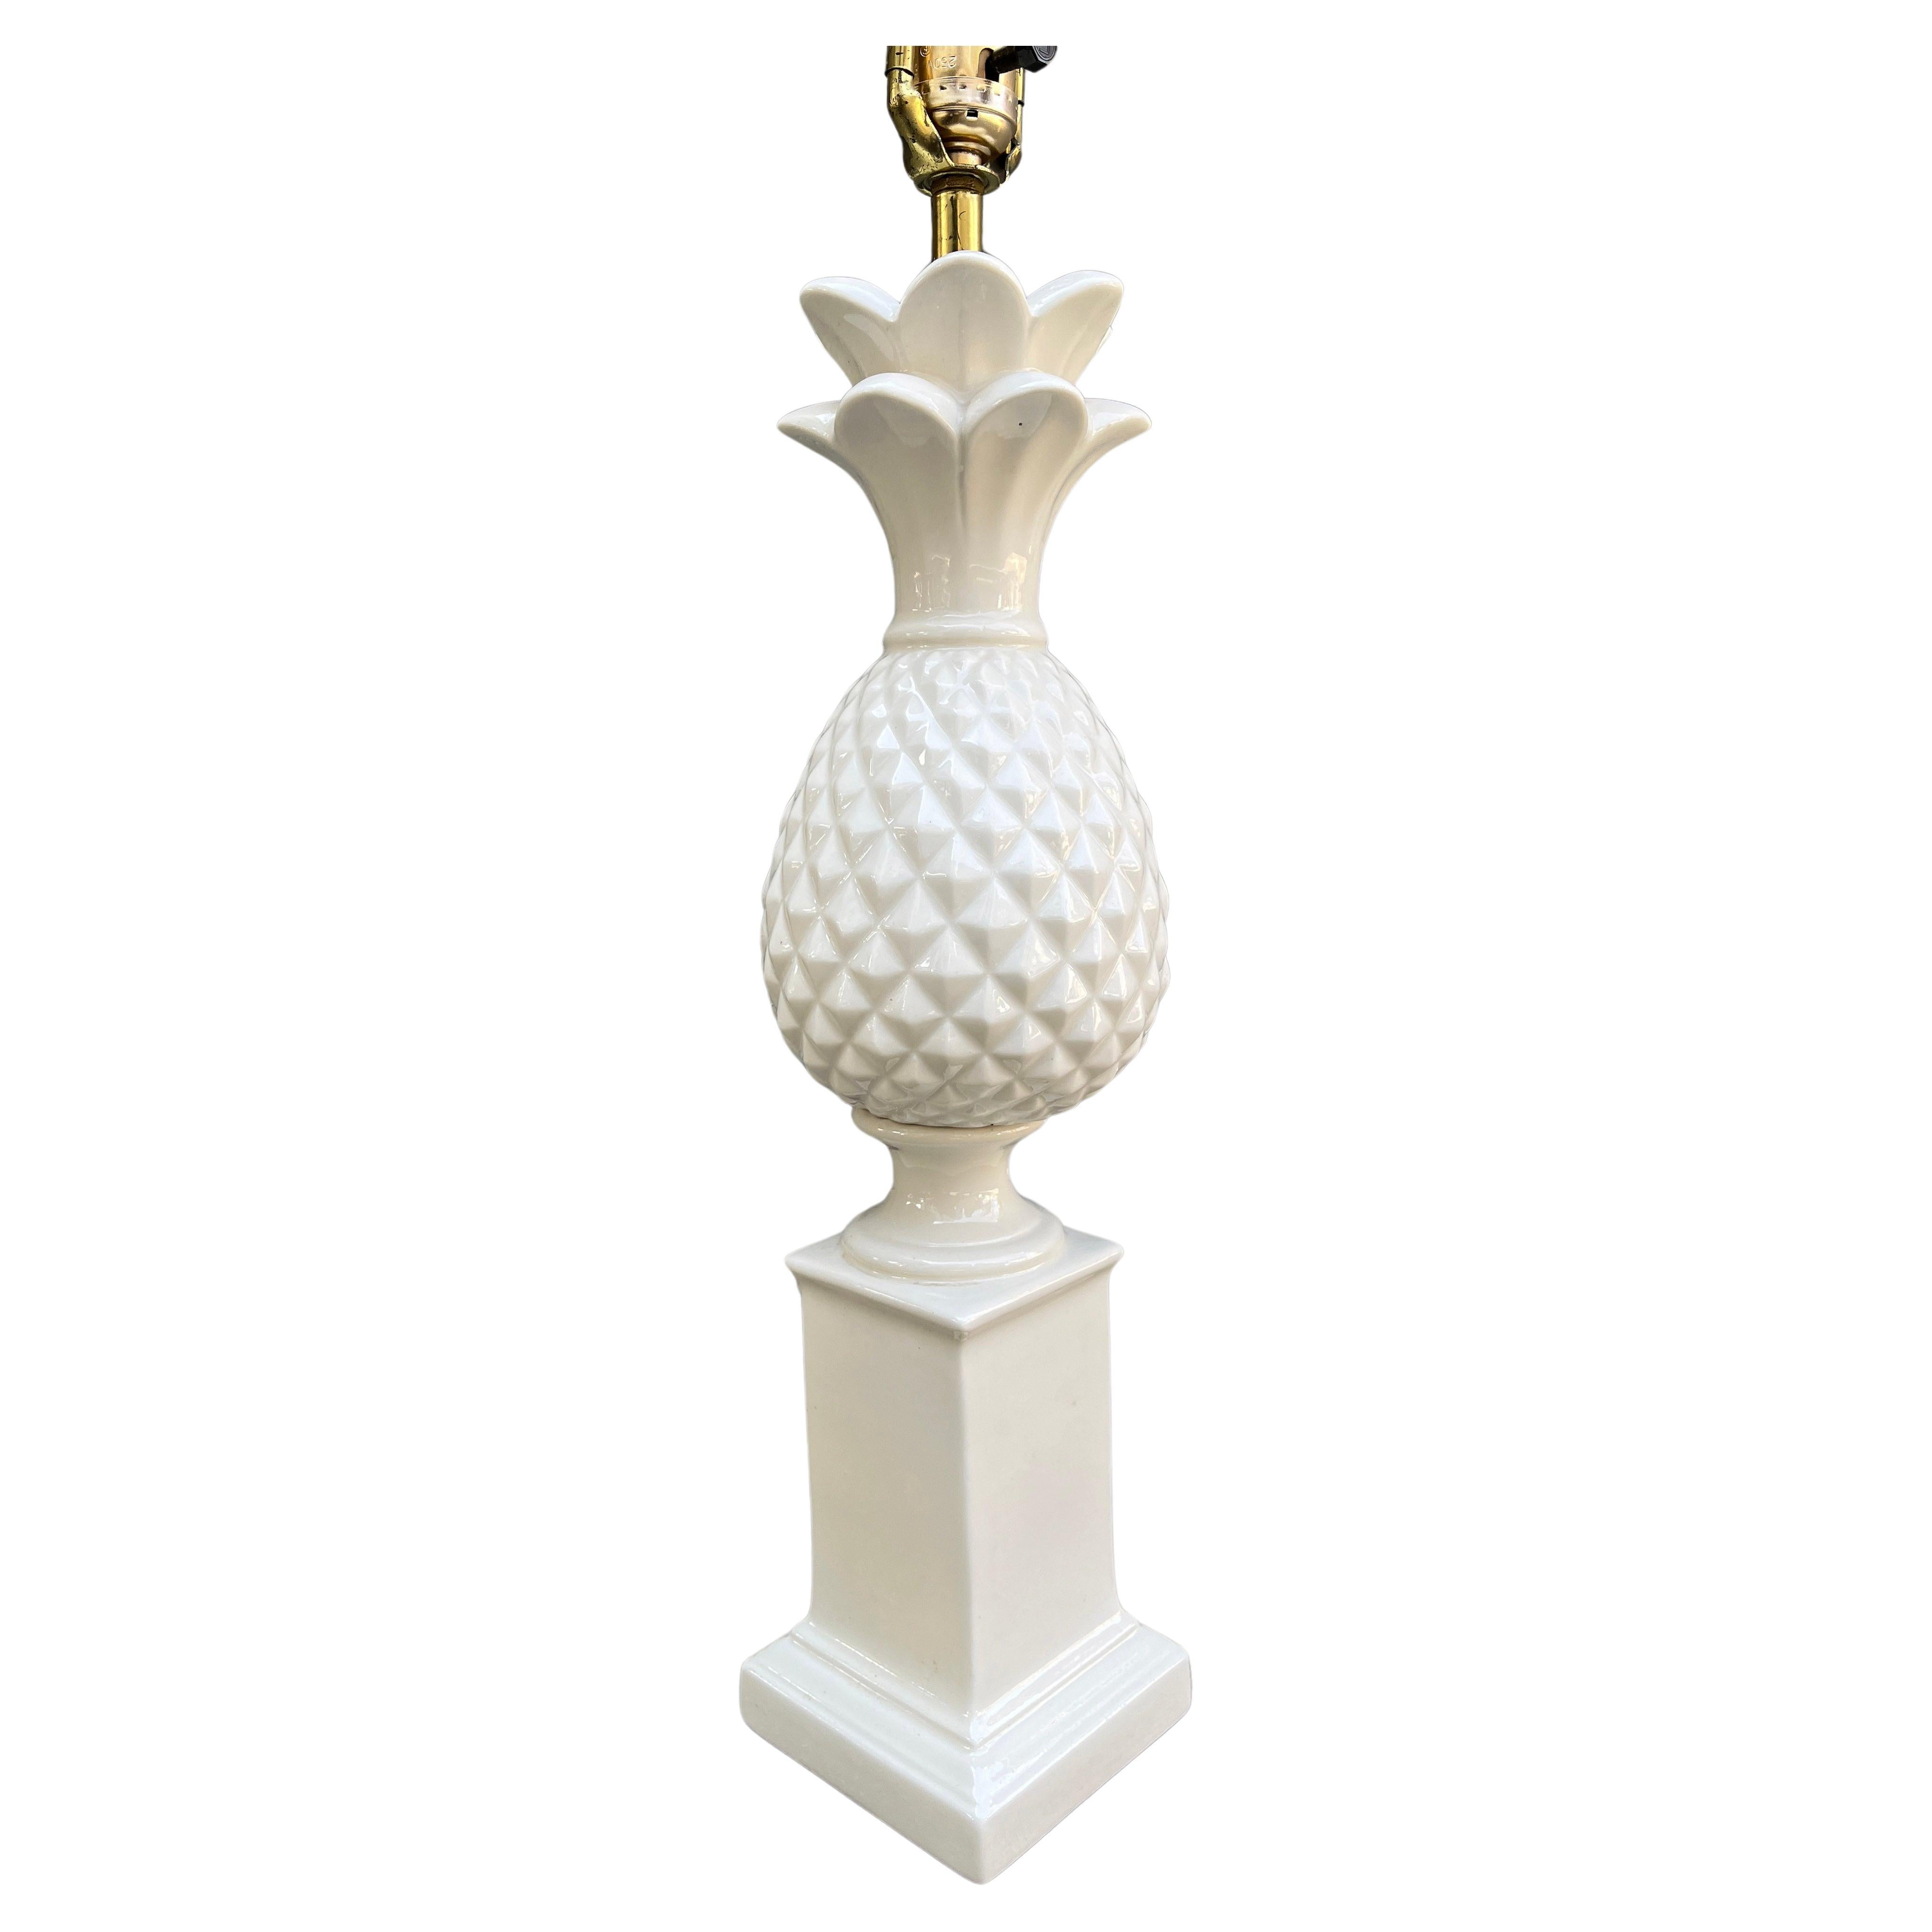 Une lampe de table décorative classique et emblématique en forme d'ananas. Fabriqué en Italie dans les années 70 en céramique émaillée blanc tendre. 